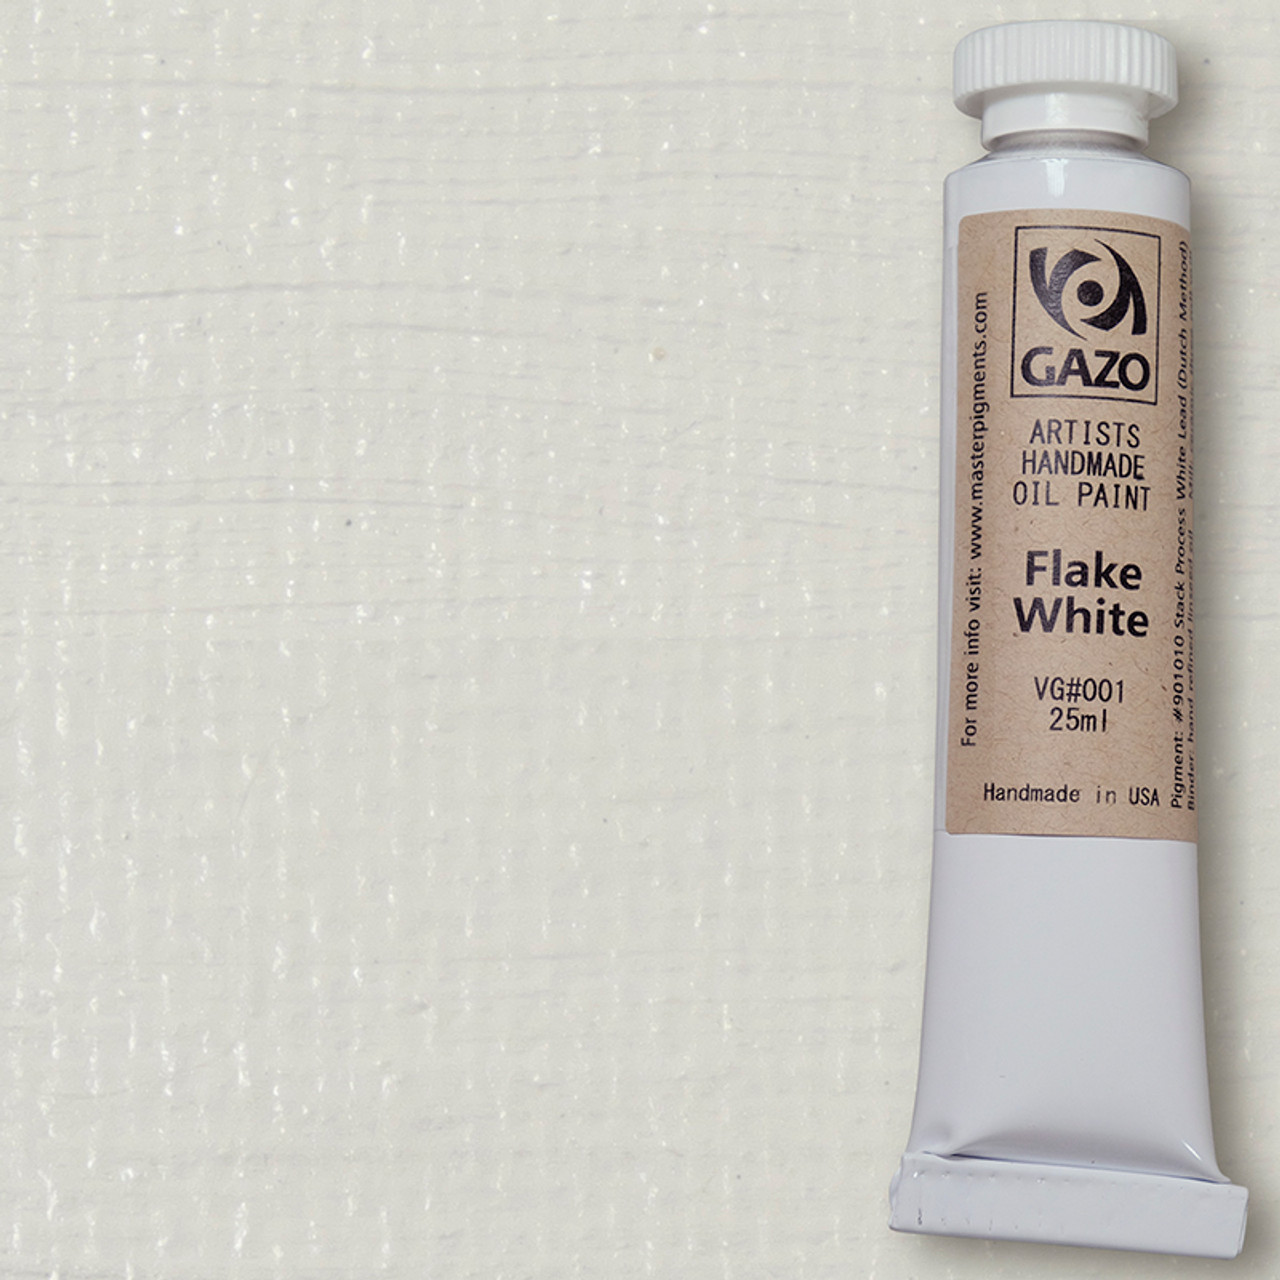 Flake white oil paint